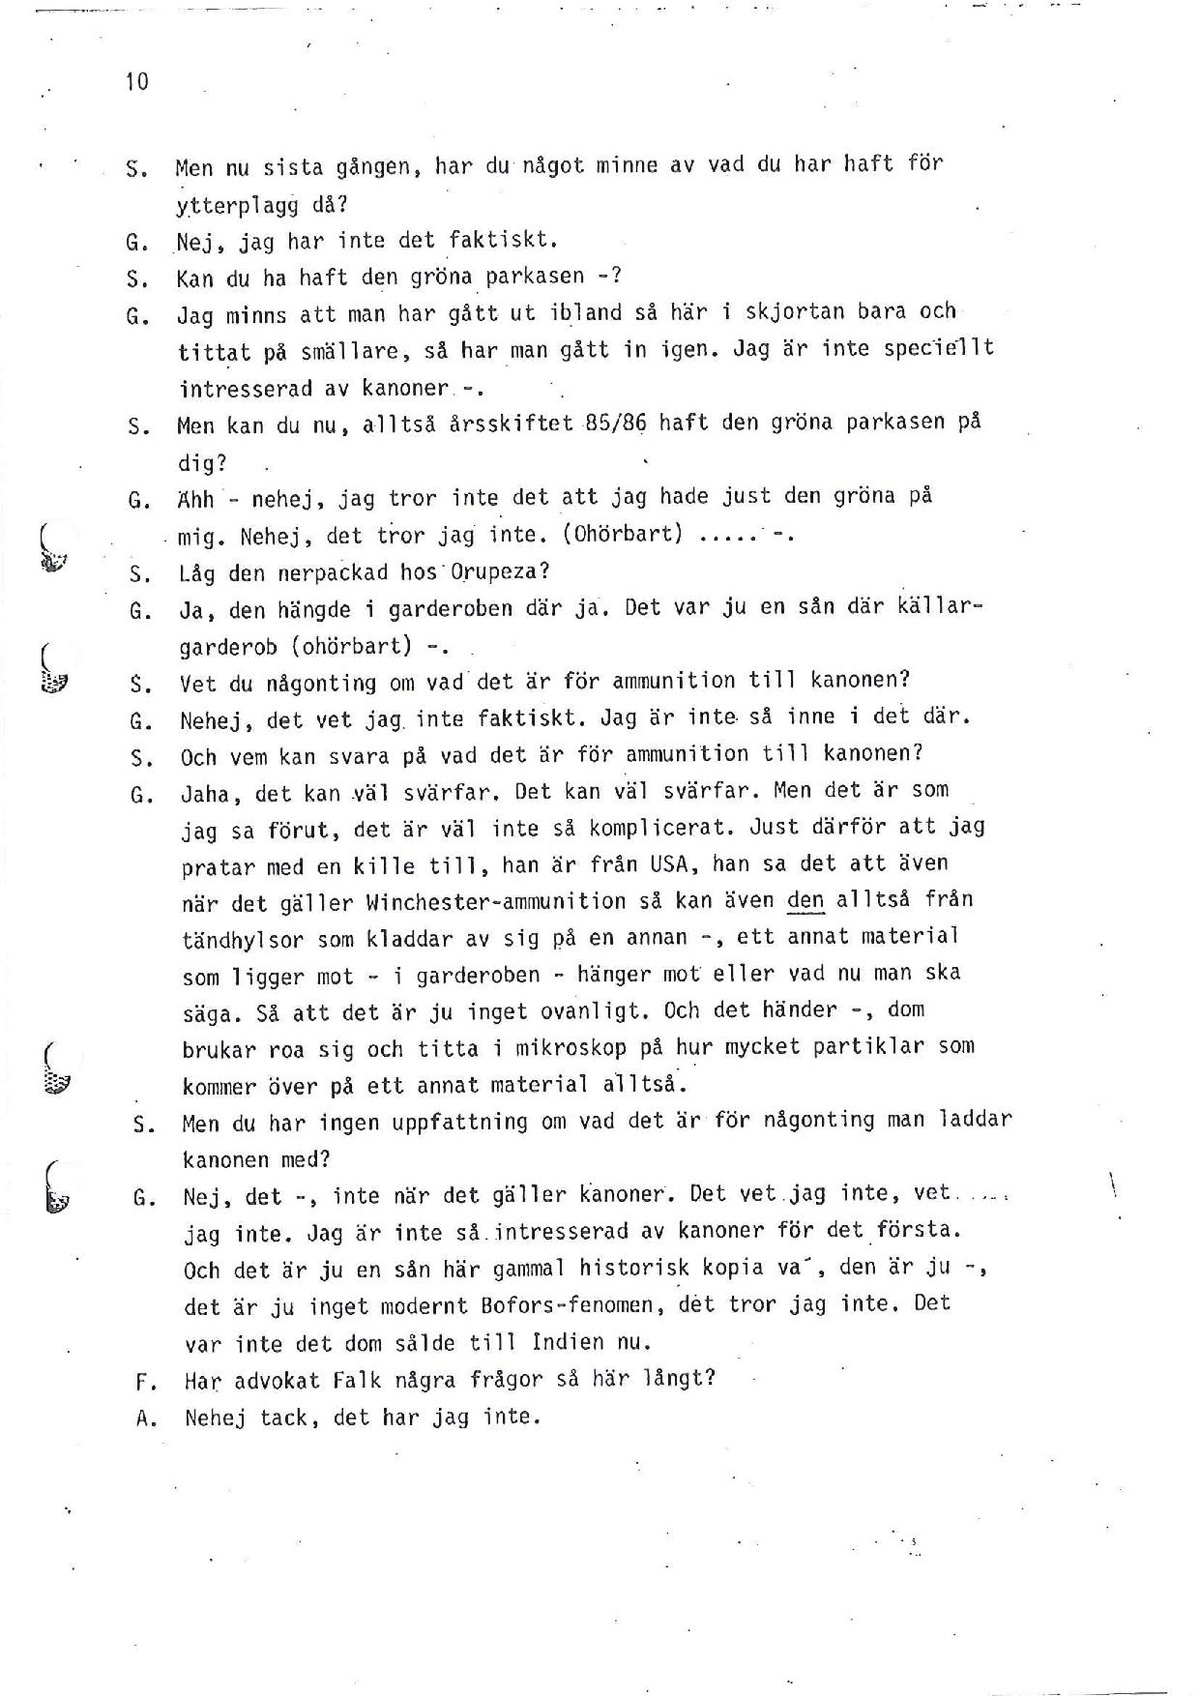 Pol-1986-05-12 N3000-00-J Förhör-VG.pdf